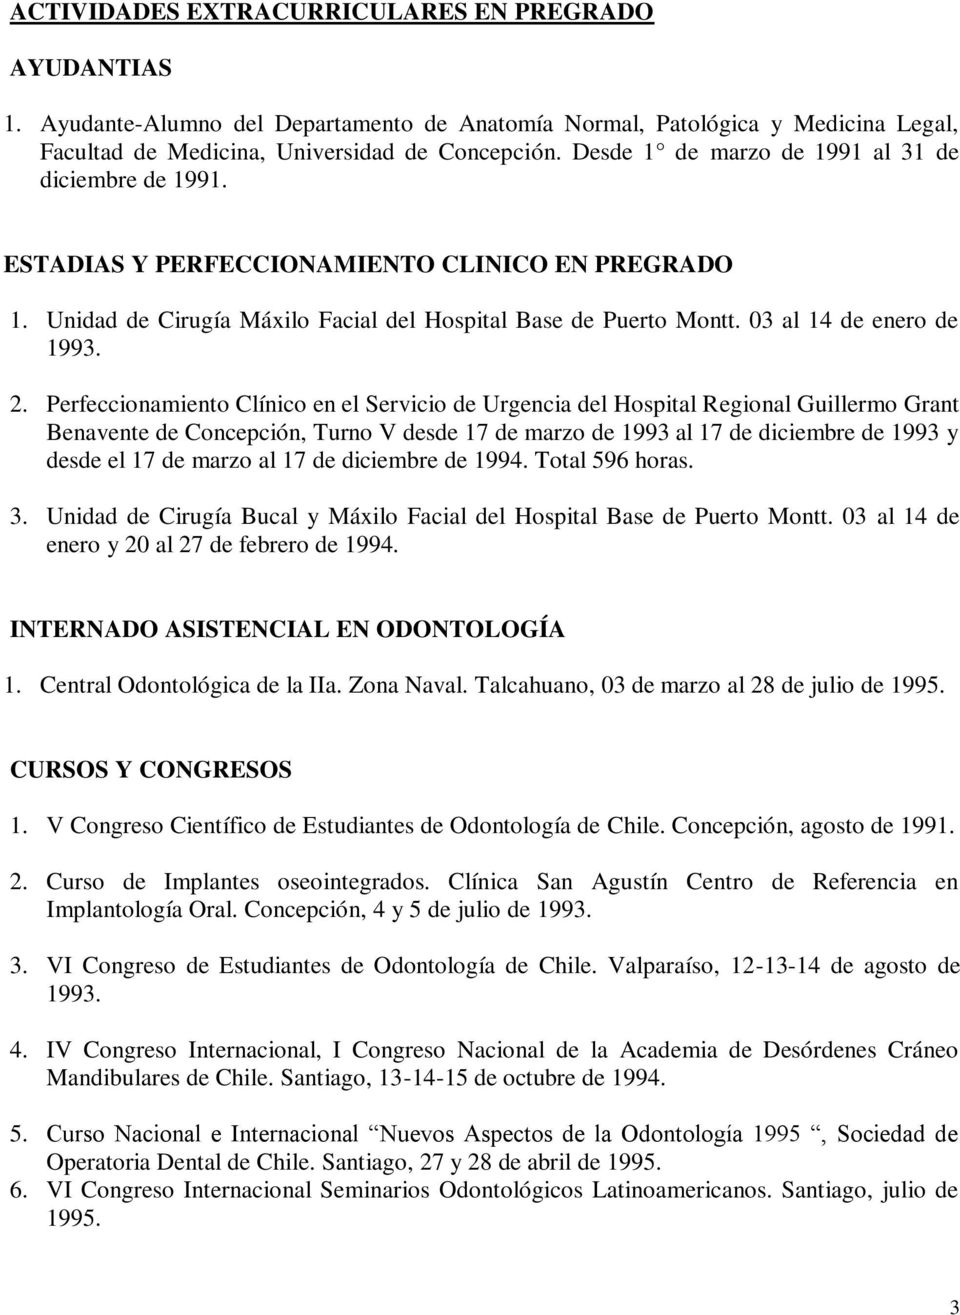 2. Perfeccionamiento Clínico en el Servicio de Urgencia del Hospital Regional Guillermo Grant Benavente de Concepción, Turno V desde 17 de marzo de 1993 al 17 de diciembre de 1993 y desde el 17 de